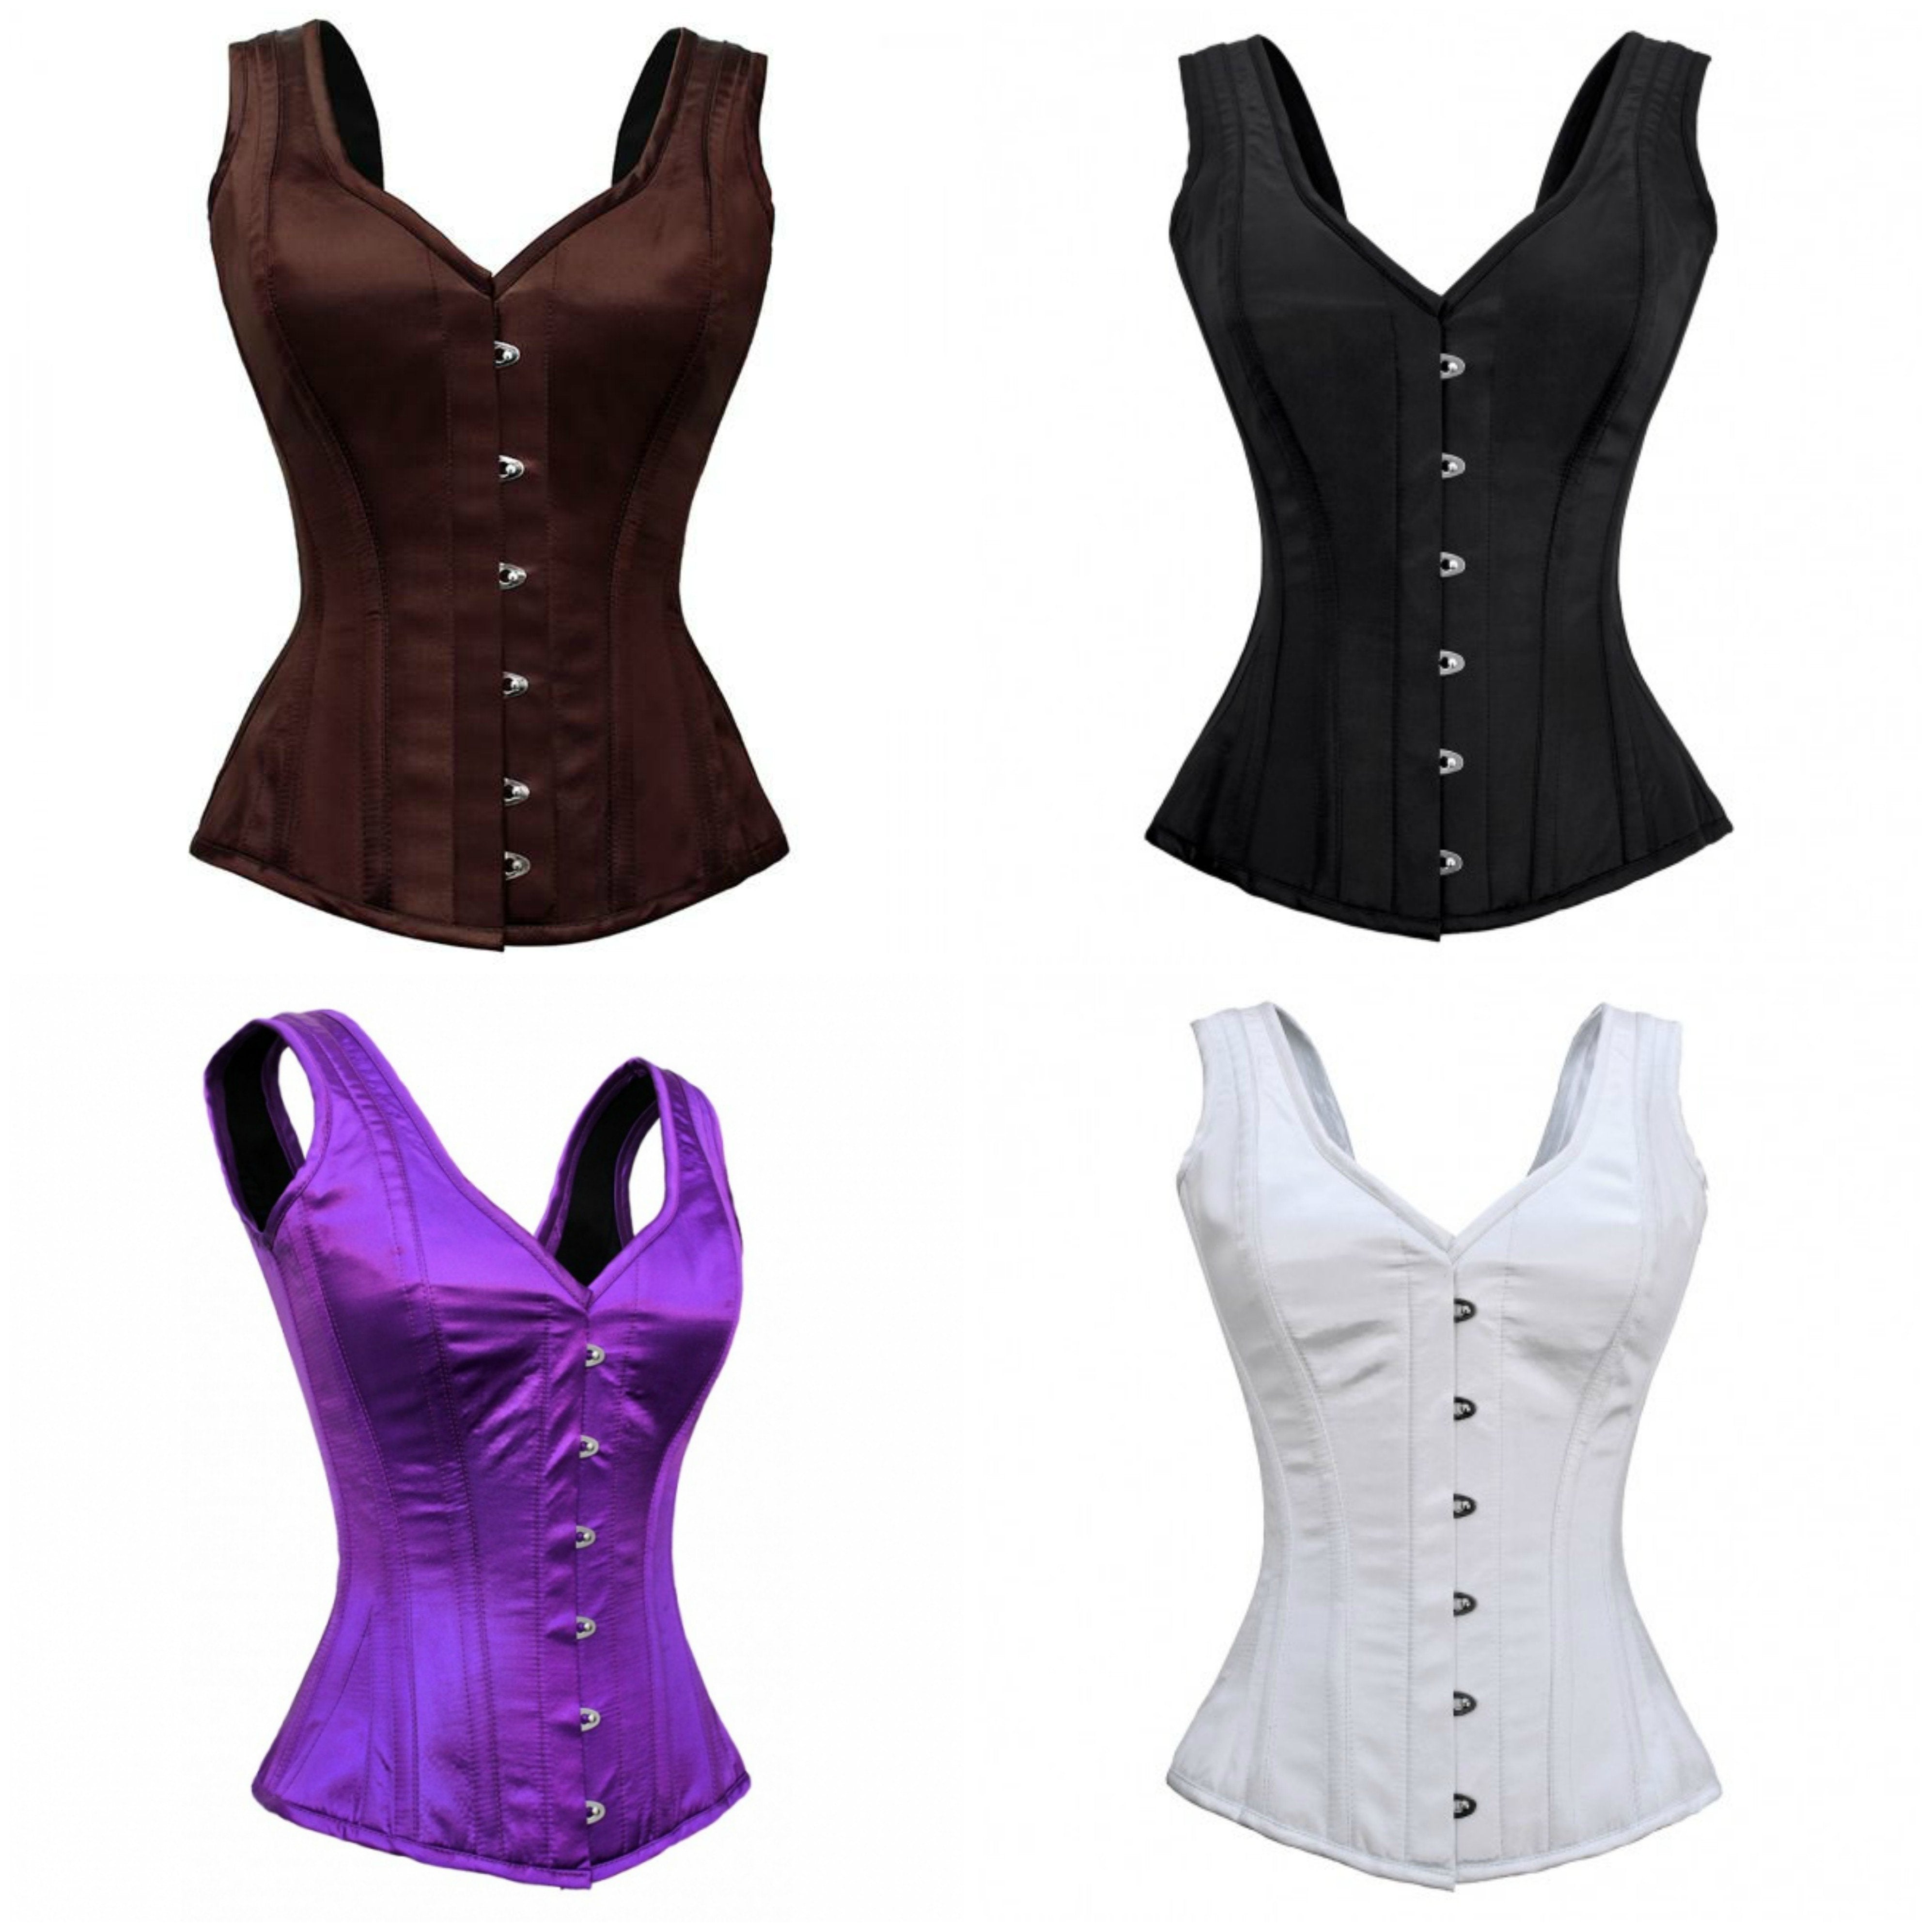 http://corsetsnmore.com/cdn/shop/collections/CNM-170-224-267-269.jpg?v=1603480821